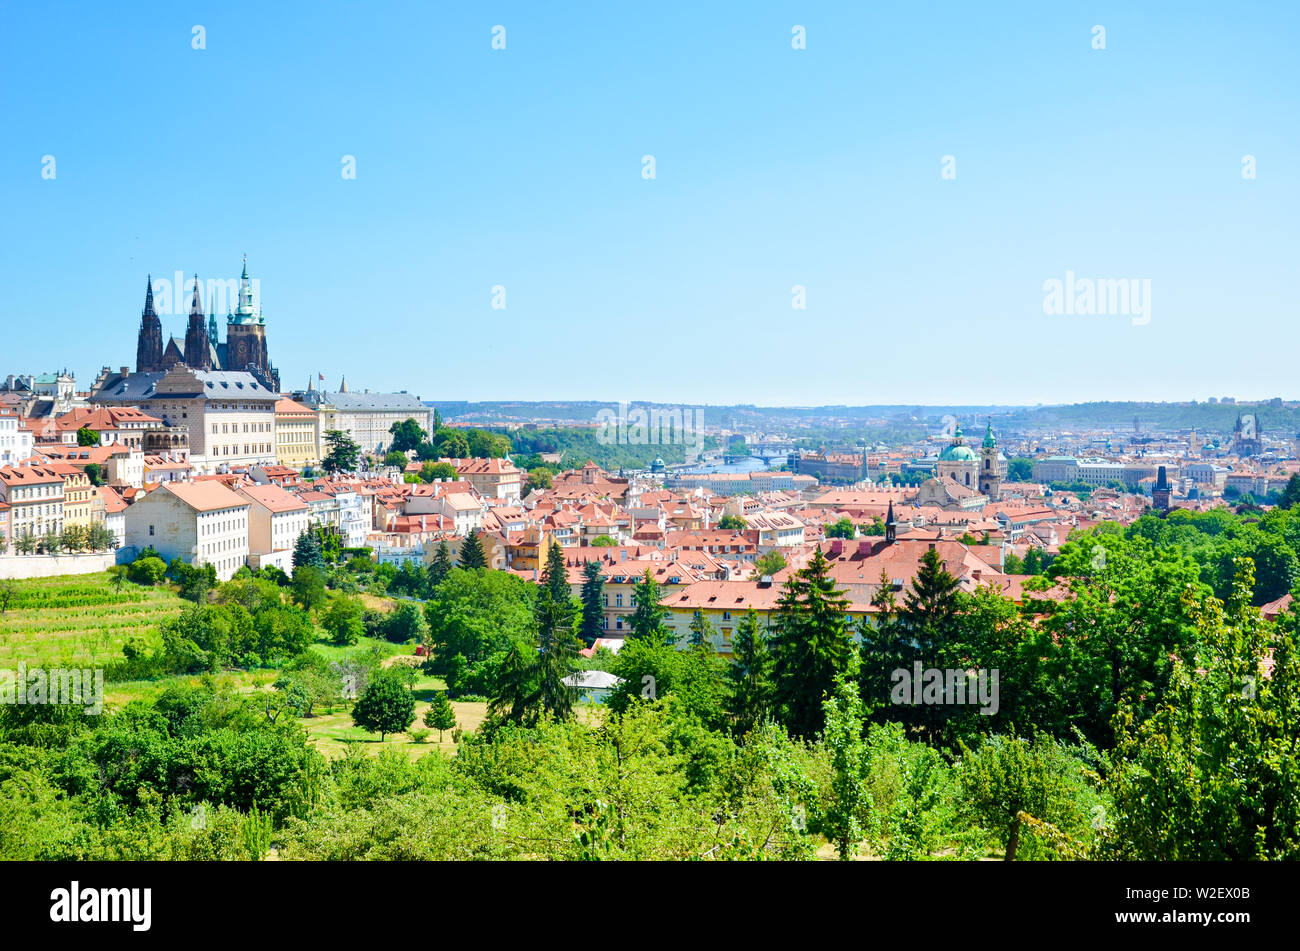 Paysage urbain étonnant de Prague, République tchèque capturées à partir de la colline de Petrin avec près de Green Park. La dominante de la capitale tchèque est magnifique, le château de Prague et la Cathédrale St Vitus. Ligne d'horizon. Banque D'Images